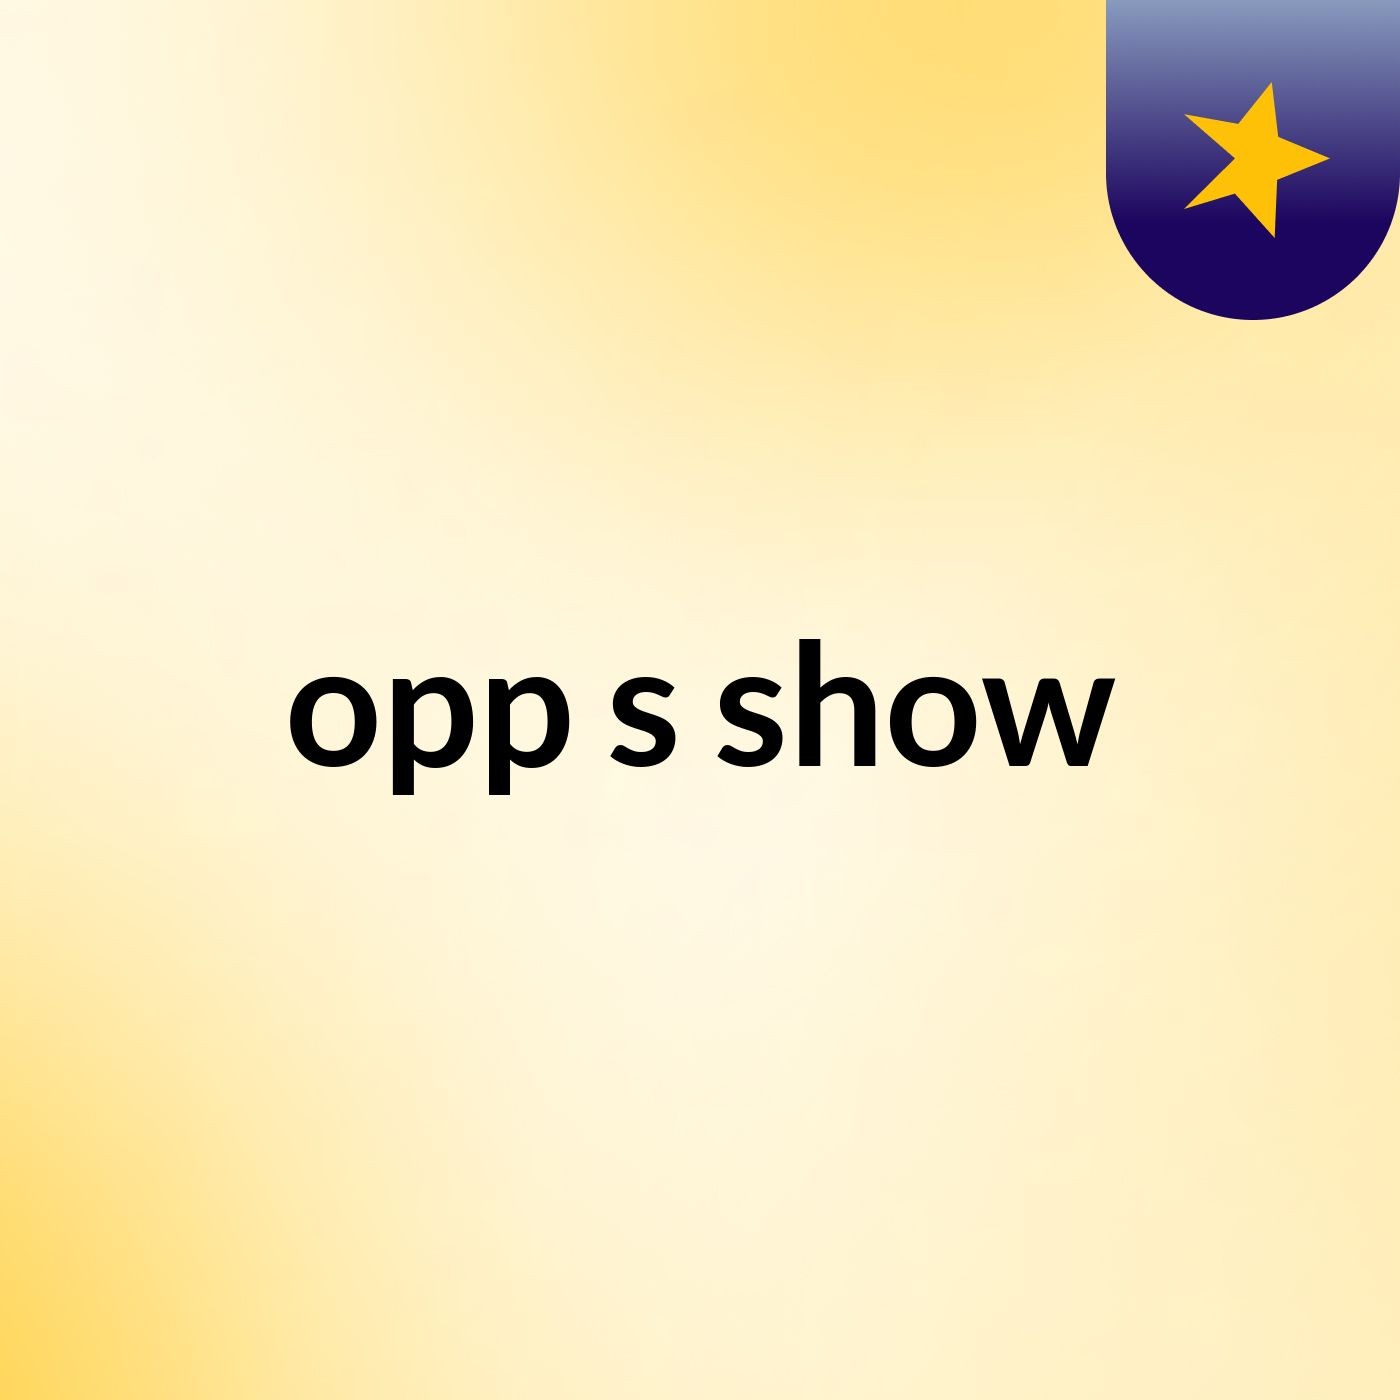 opp's show